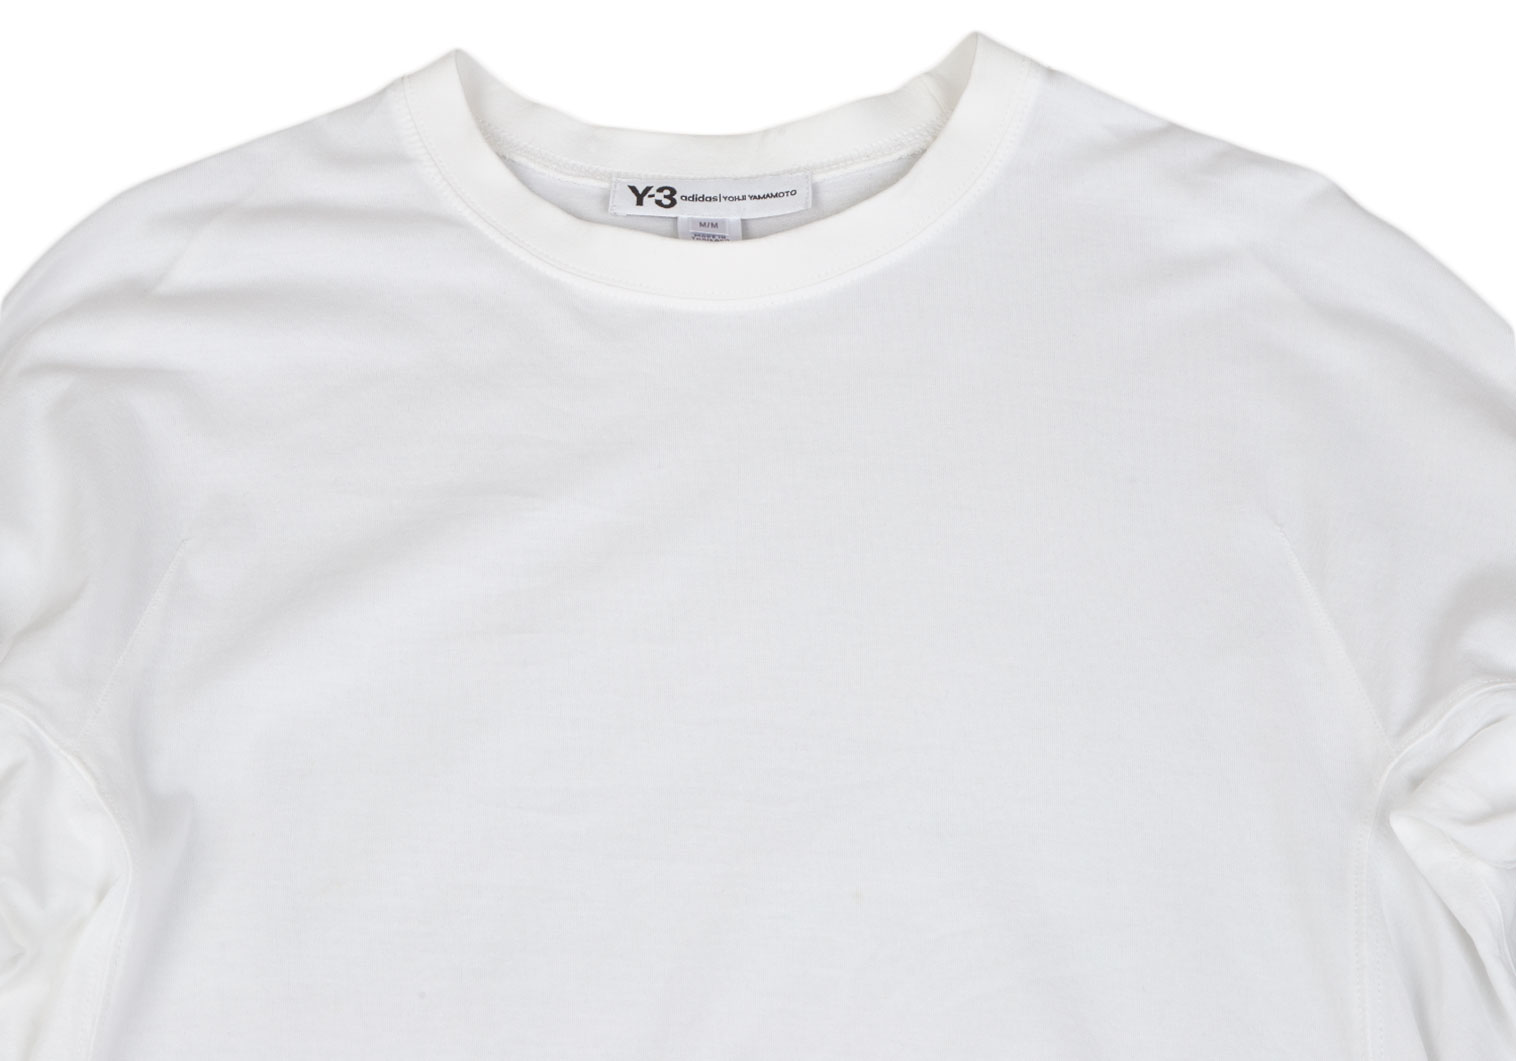 Y-3 トップス Tシャツ ホワイト 白 プリント ロゴ 半袖 ブランド ...